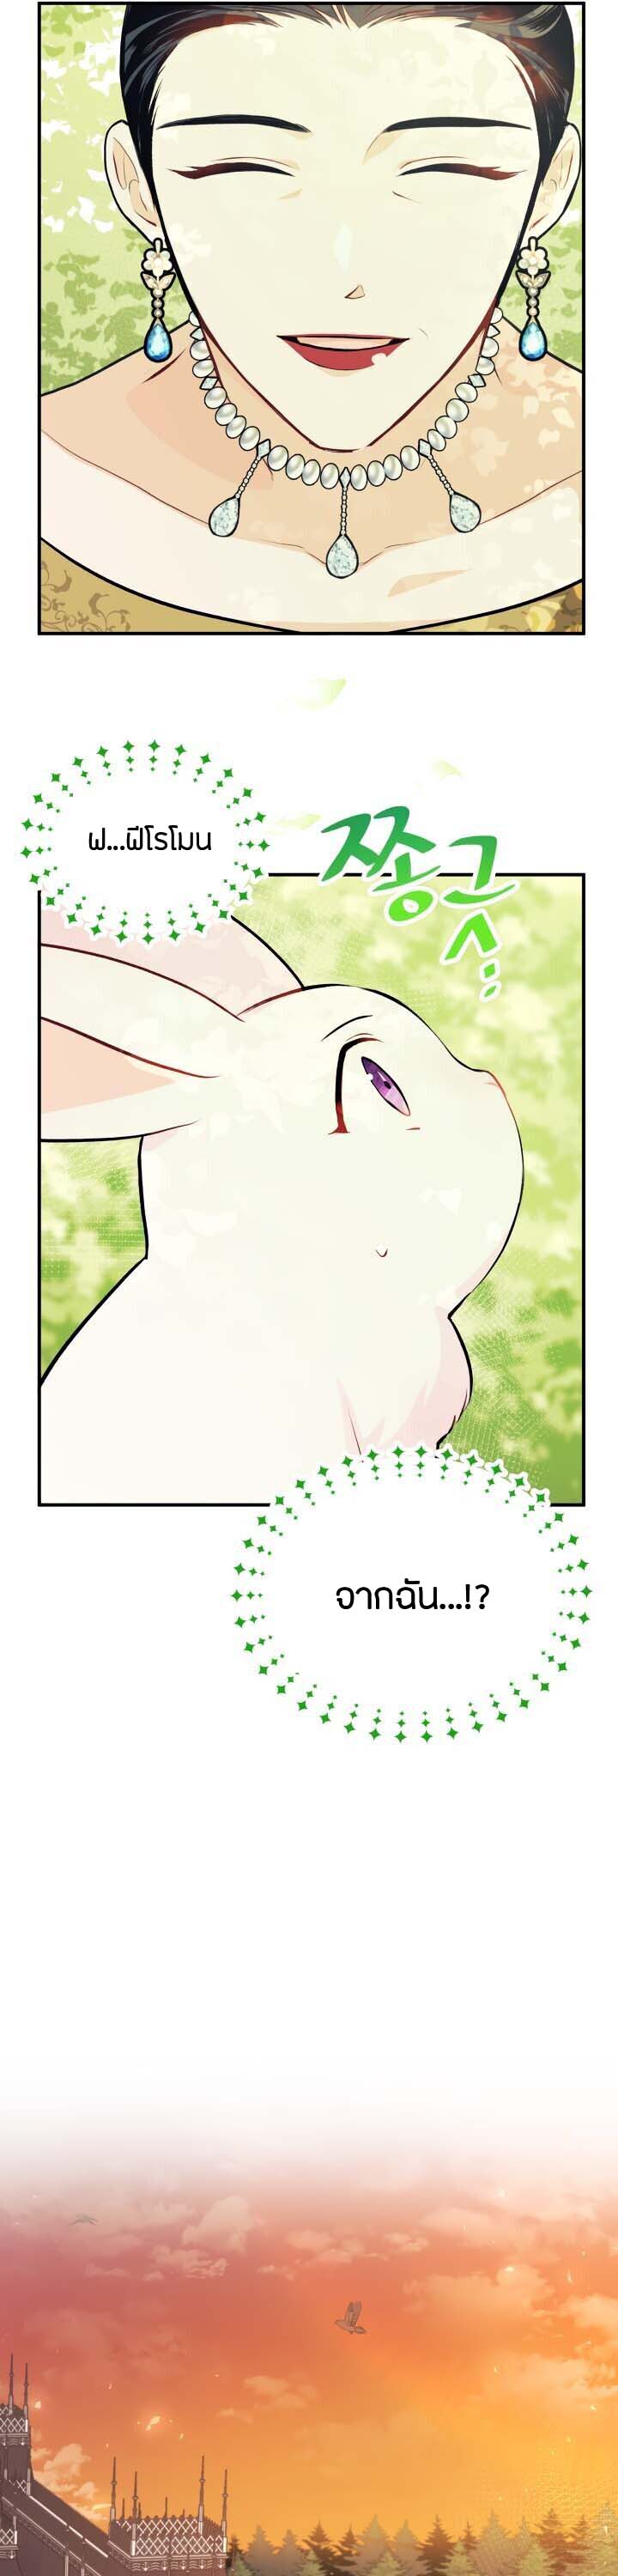 rabbit5 25